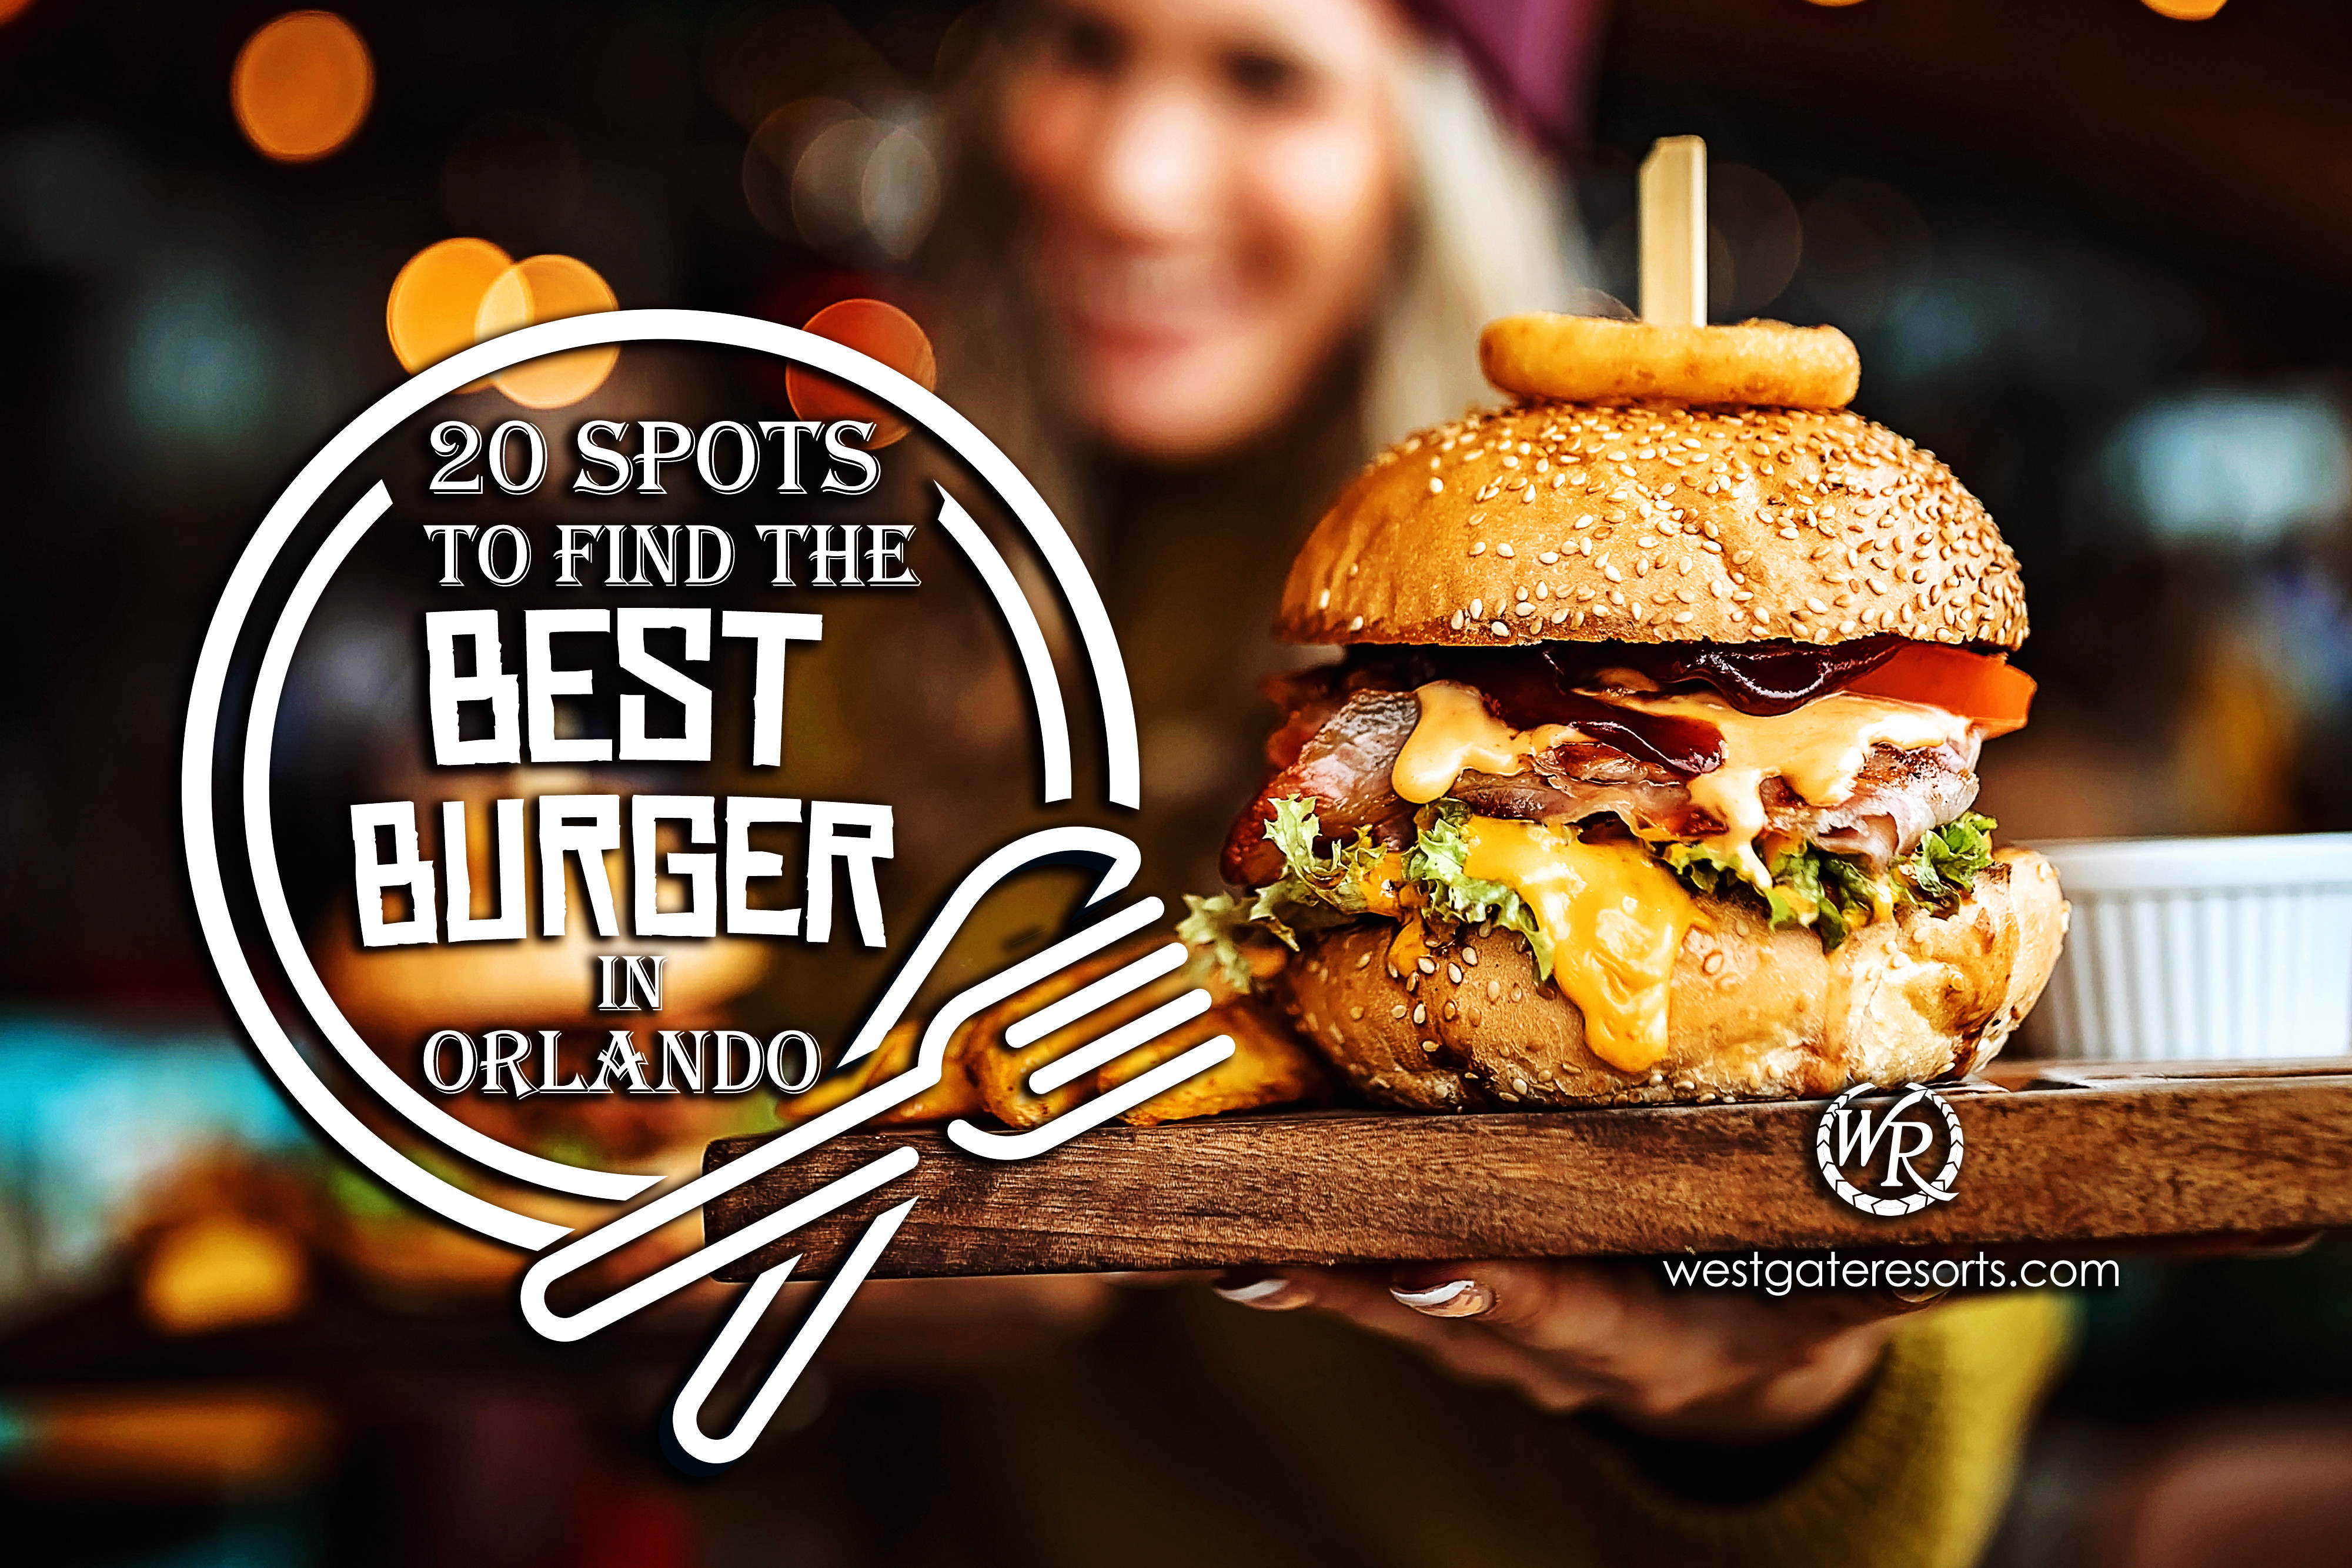 20 lugares para encontrar la mejor hamburguesa en Orlando